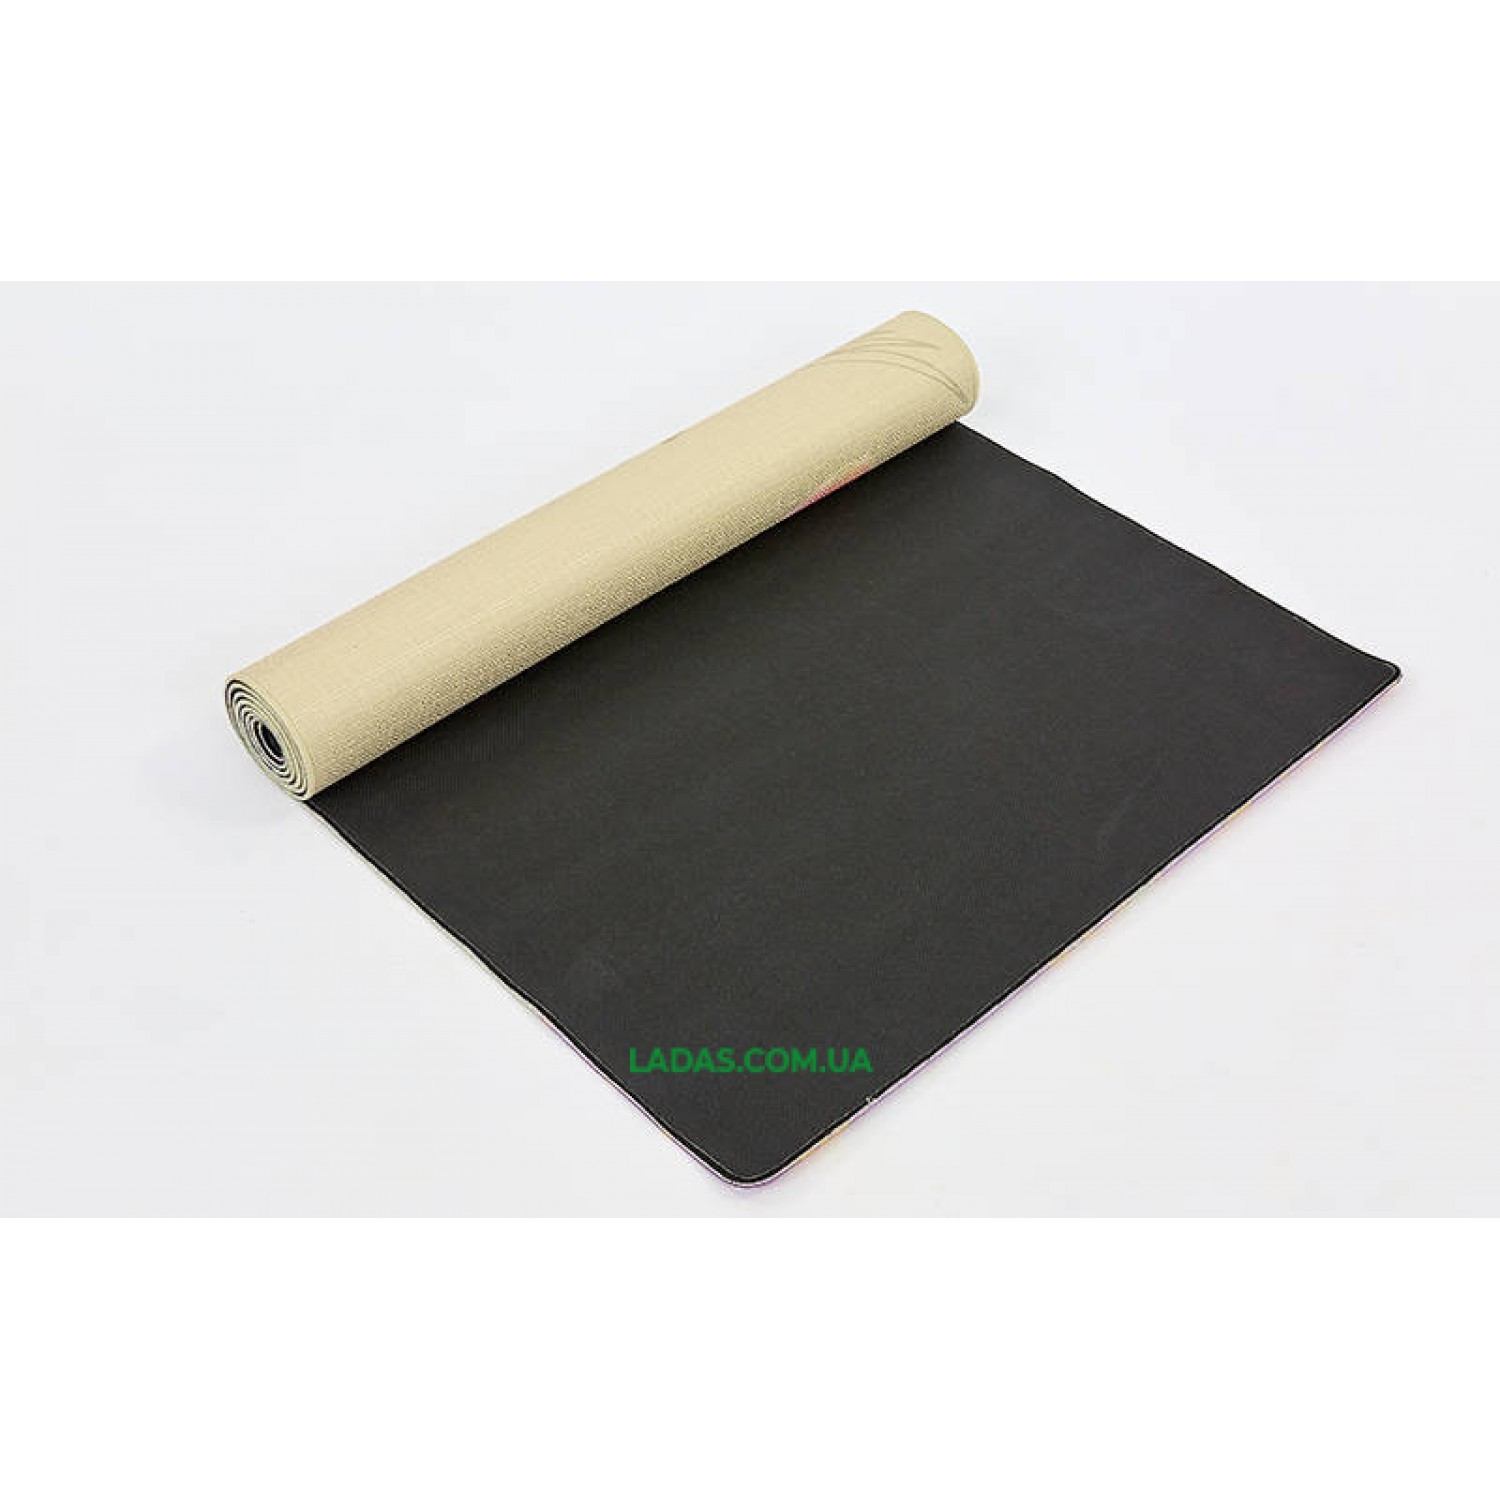 Коврик для йоги Джутовый (Yoga mat) двухслойный (1,83мx0,61мx3мм, лен, каучук)